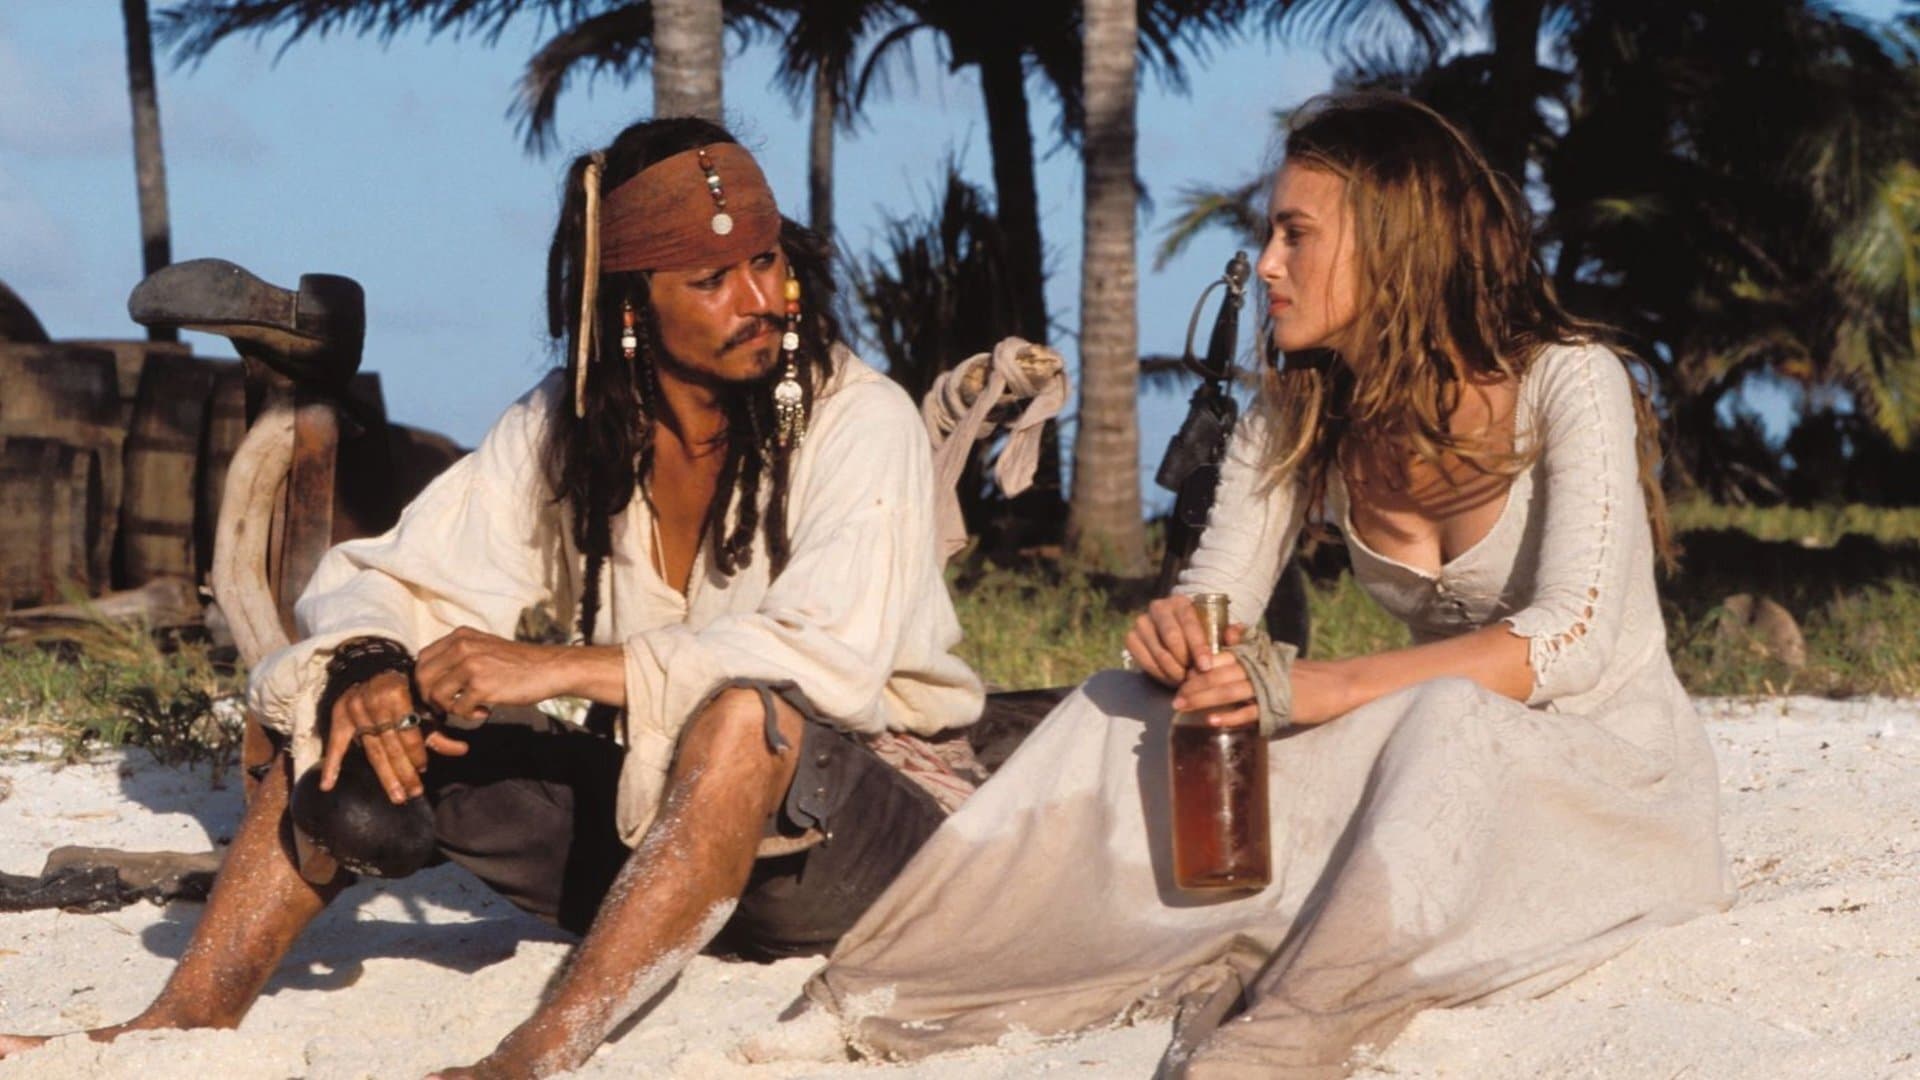 Poster Phim Cướp Biển Vùng Caribbean: Lời Nguyền Của Tàu Ngọc Trai Đen (Pirates of the Caribbean: The Curse of the Black Pearl)